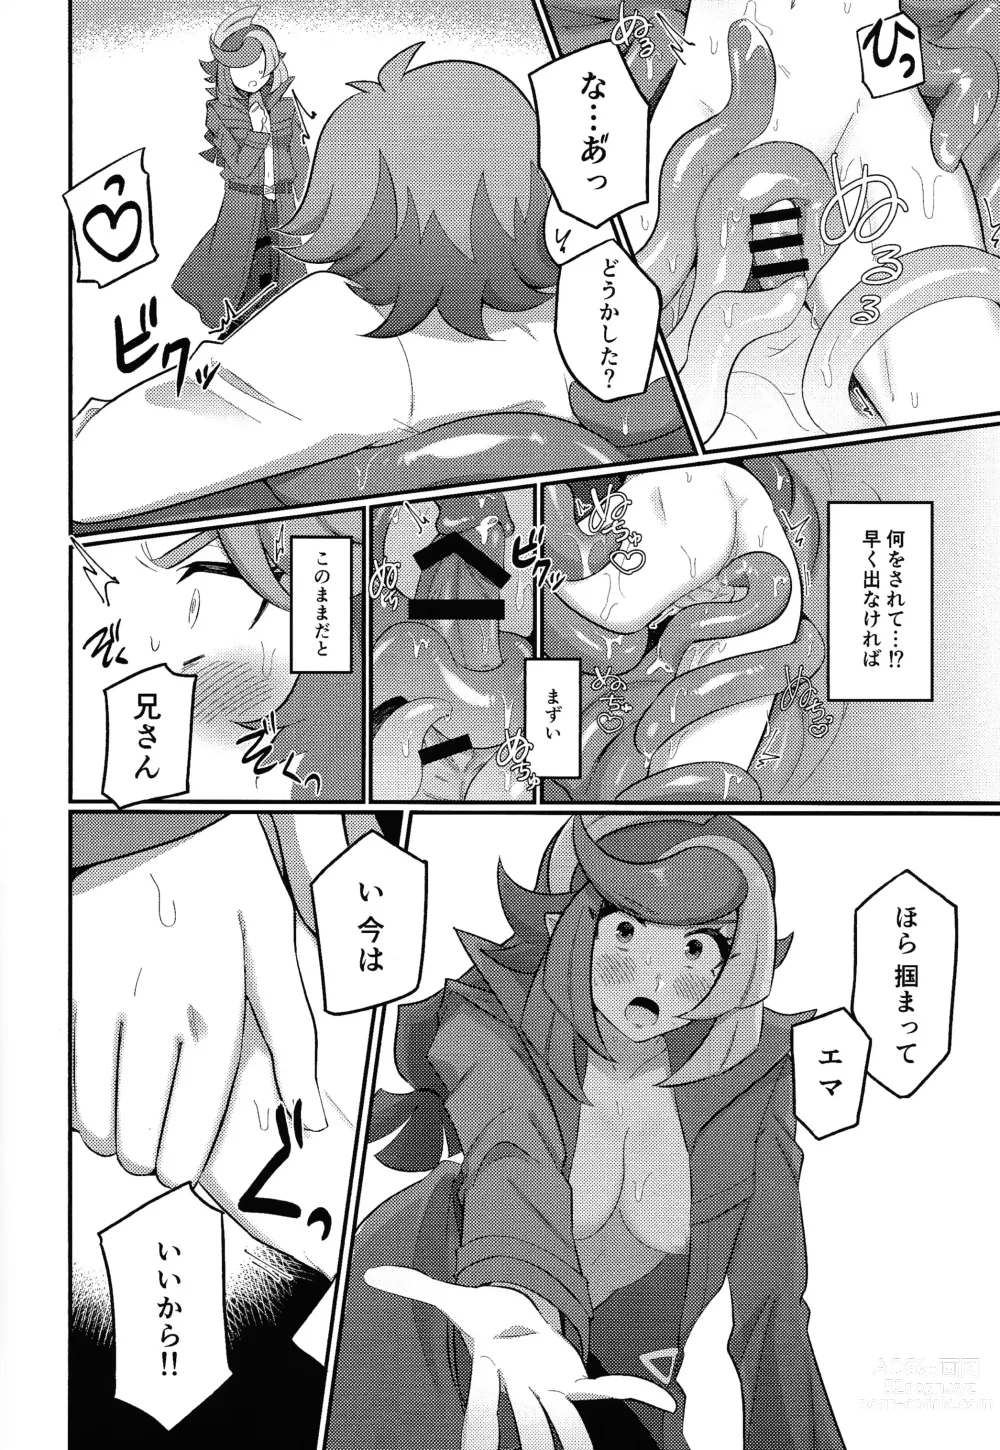 Page 9 of doujinshi Sennyuu Ero Trap World